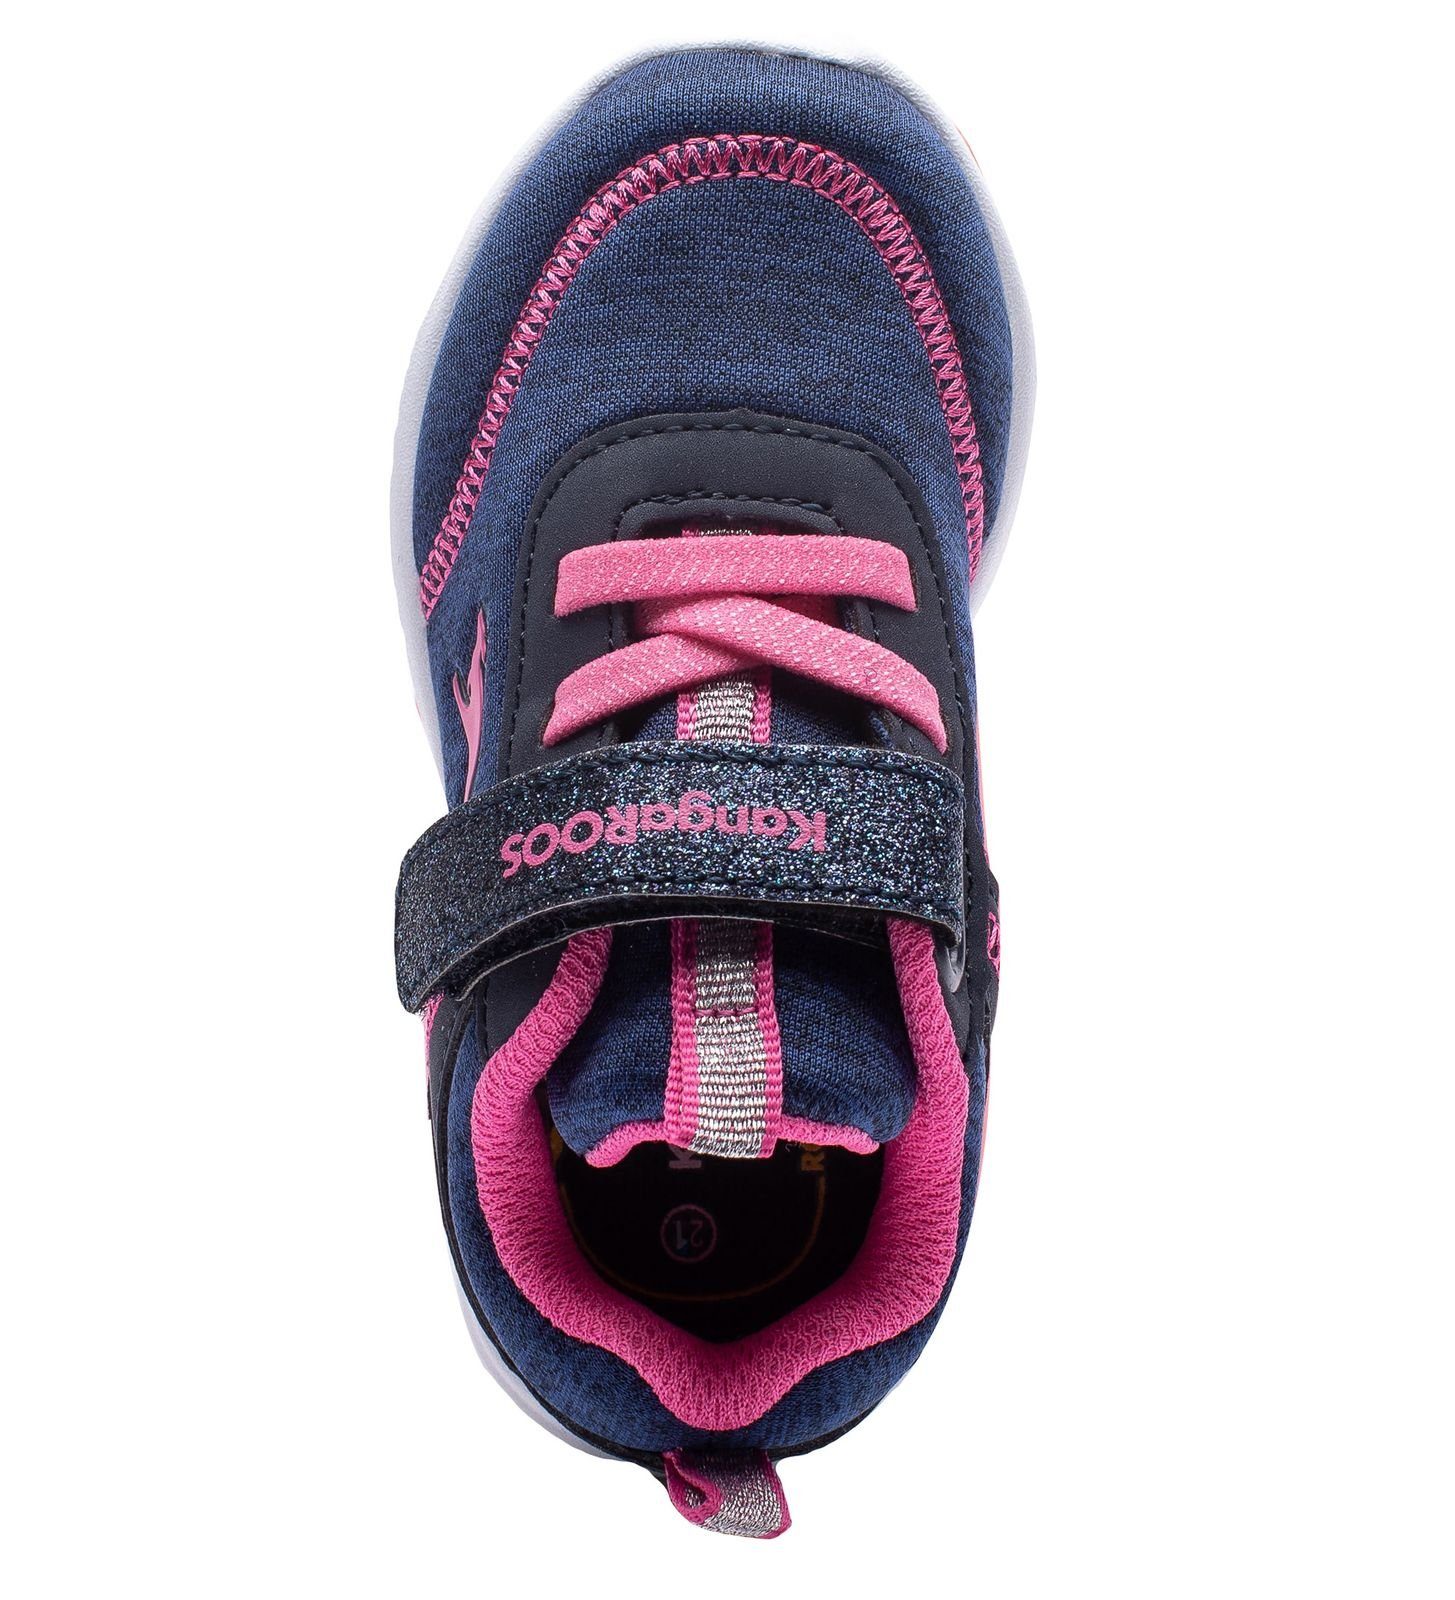 (12801384) Kinder navy/fandango KangaROOS 02078-4294 EV dk KangaROOS navy/fandango pink pink Sneaker Sneaker KY-Chummy